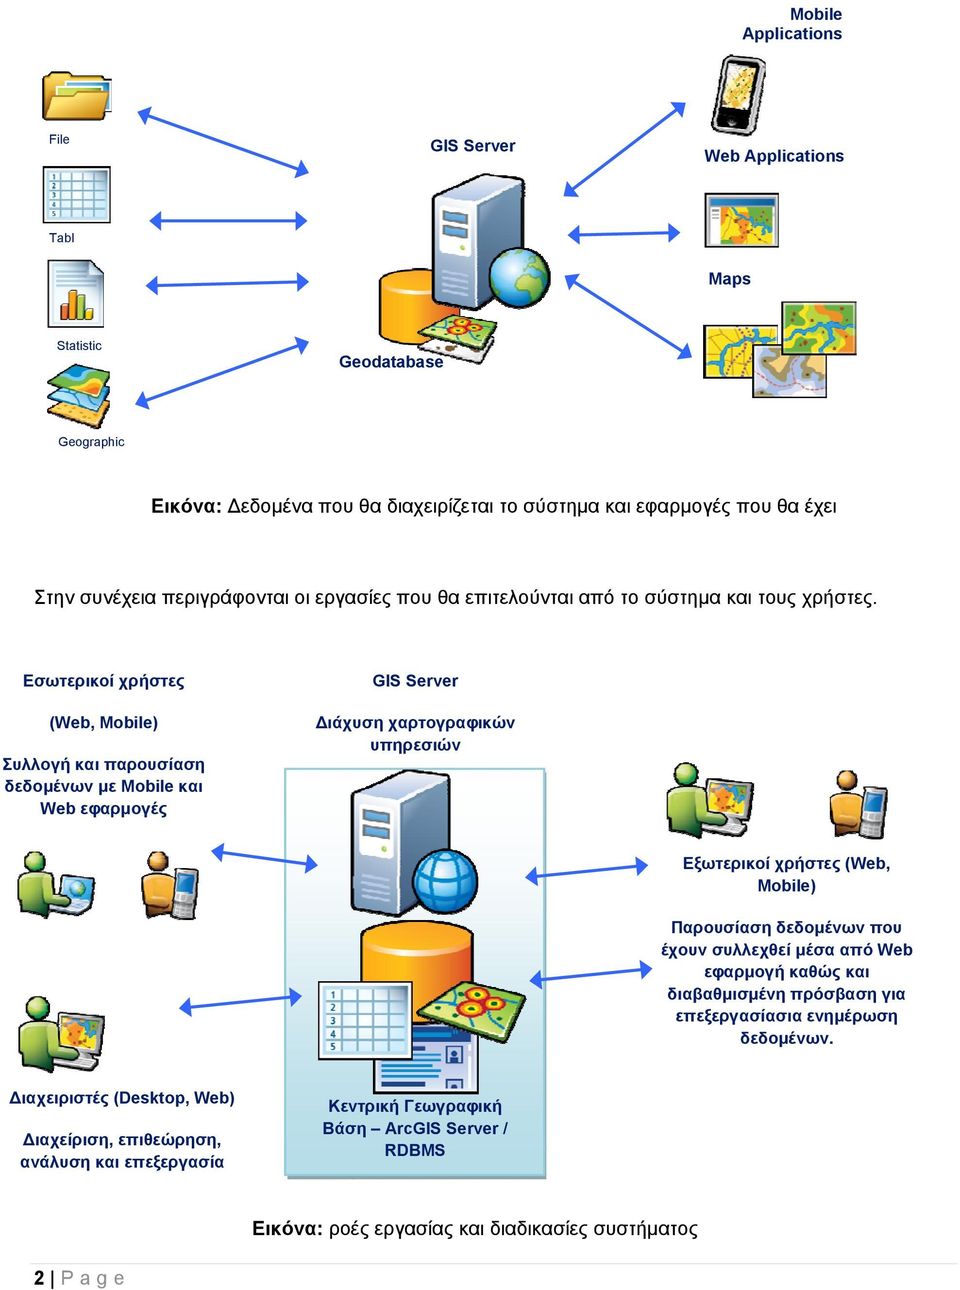 Εσωτερικοί χρήστες (Web, Mobile) Συλλογή και παρουσίαση δεδομένων με Mobile και Web εφαρμογές GIS Server ιάχυση χαρτογραφικών υπηρεσιών Εξωτερικοί χρήστες (Web, Mobile) Παρουσίαση